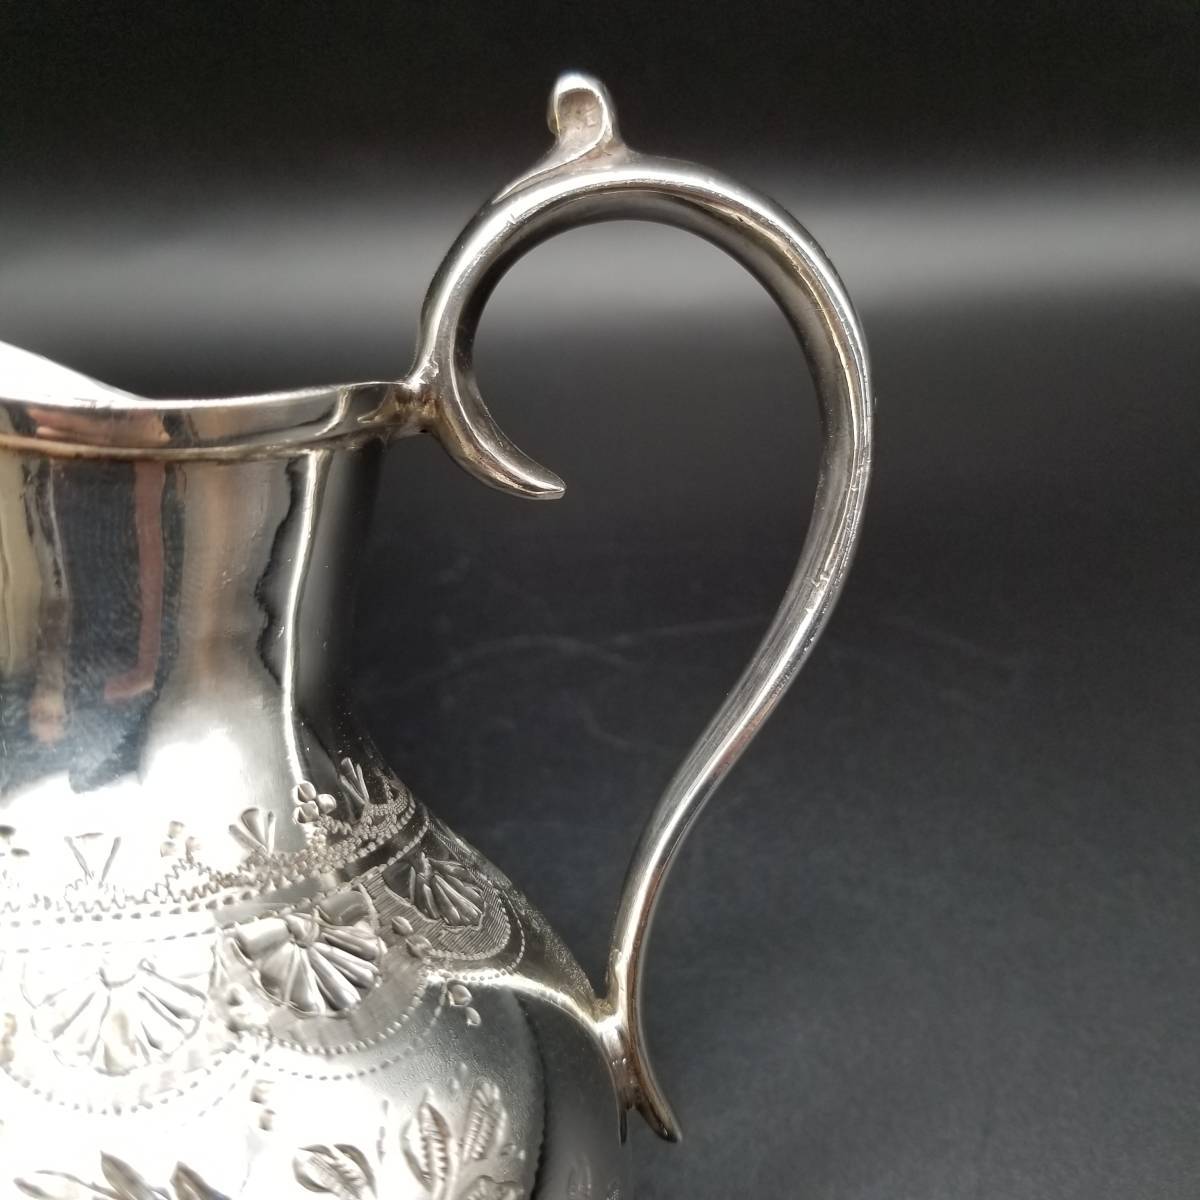 1800年代後半 英国 アンティーク ヴィクトリア シルバーメッキ ミルクジャグ ポット 銀メッキ 彫金 Atkin Brothers 紅茶 花 フローラル